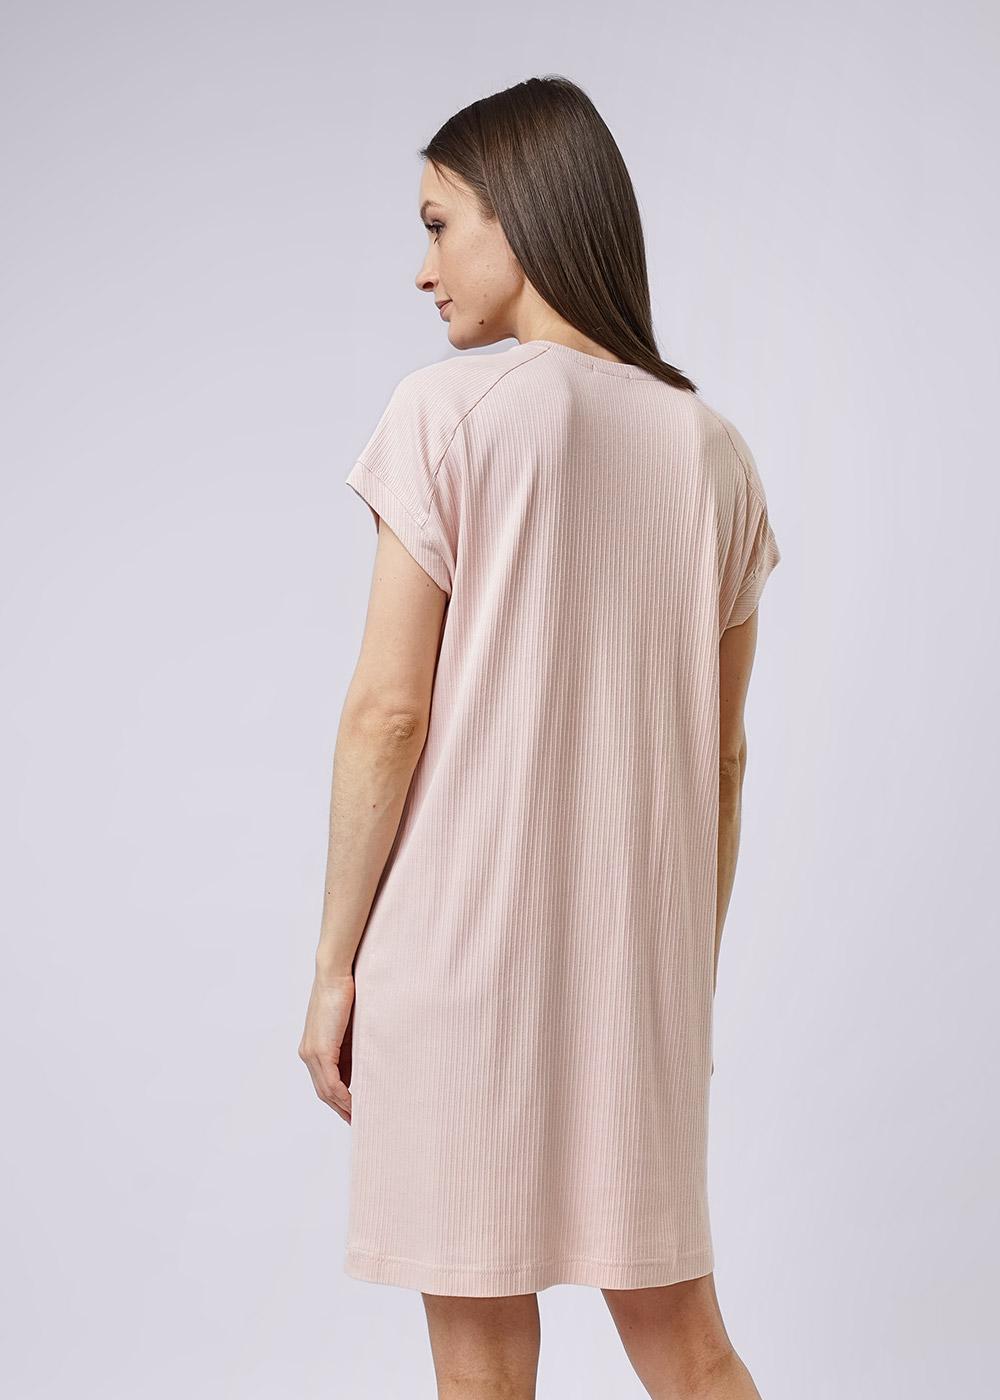 CLE LDR13-300 Платье женское для дома